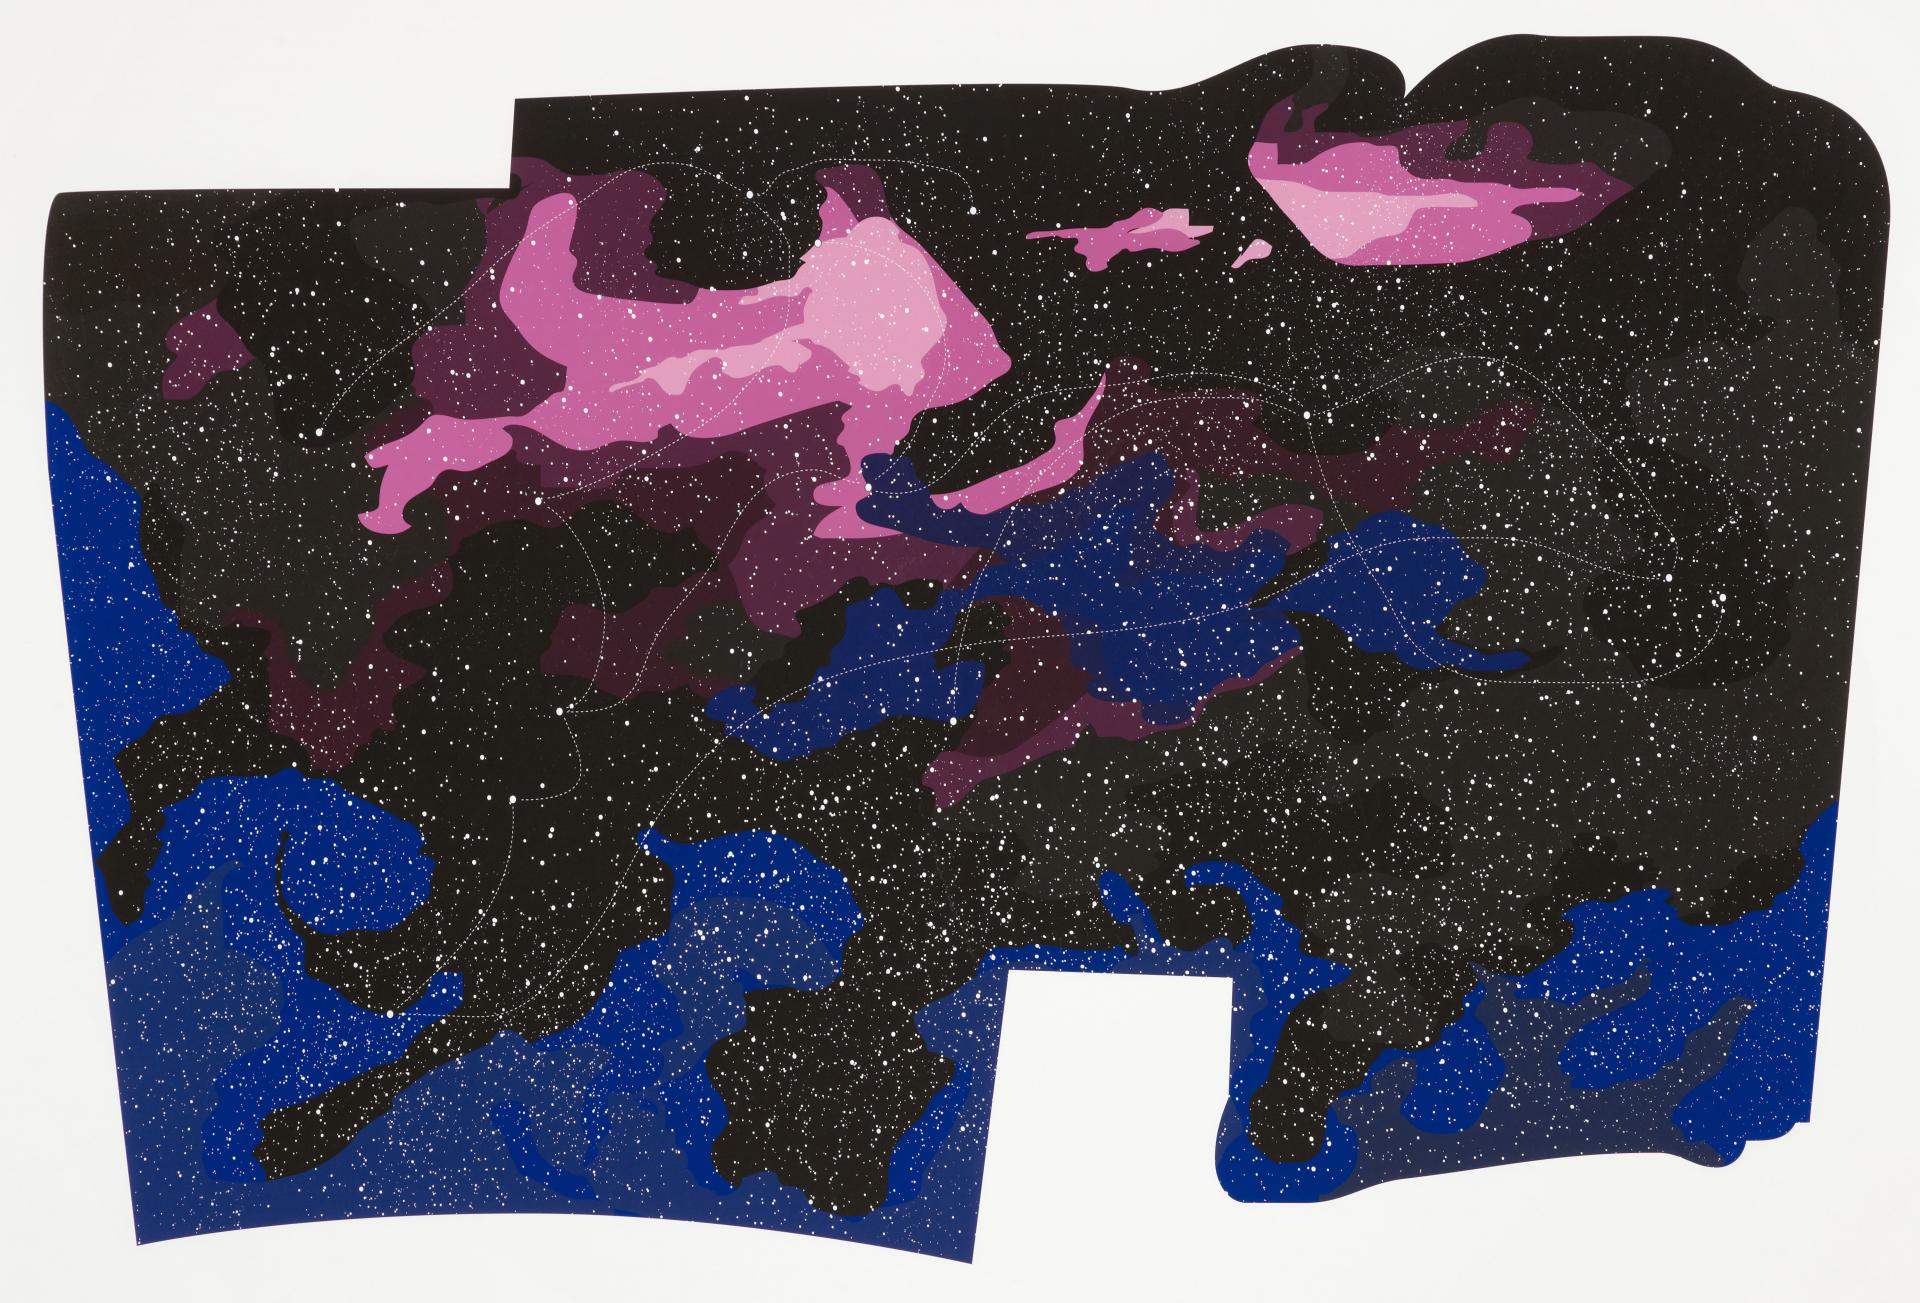 Paul Chan, The Constellation Series, 2005. Emanuel Hoffmann-Stiftung, Geschenk der Präsidentin, Depositum in der Öffentlichen Kunstsammlung Basel